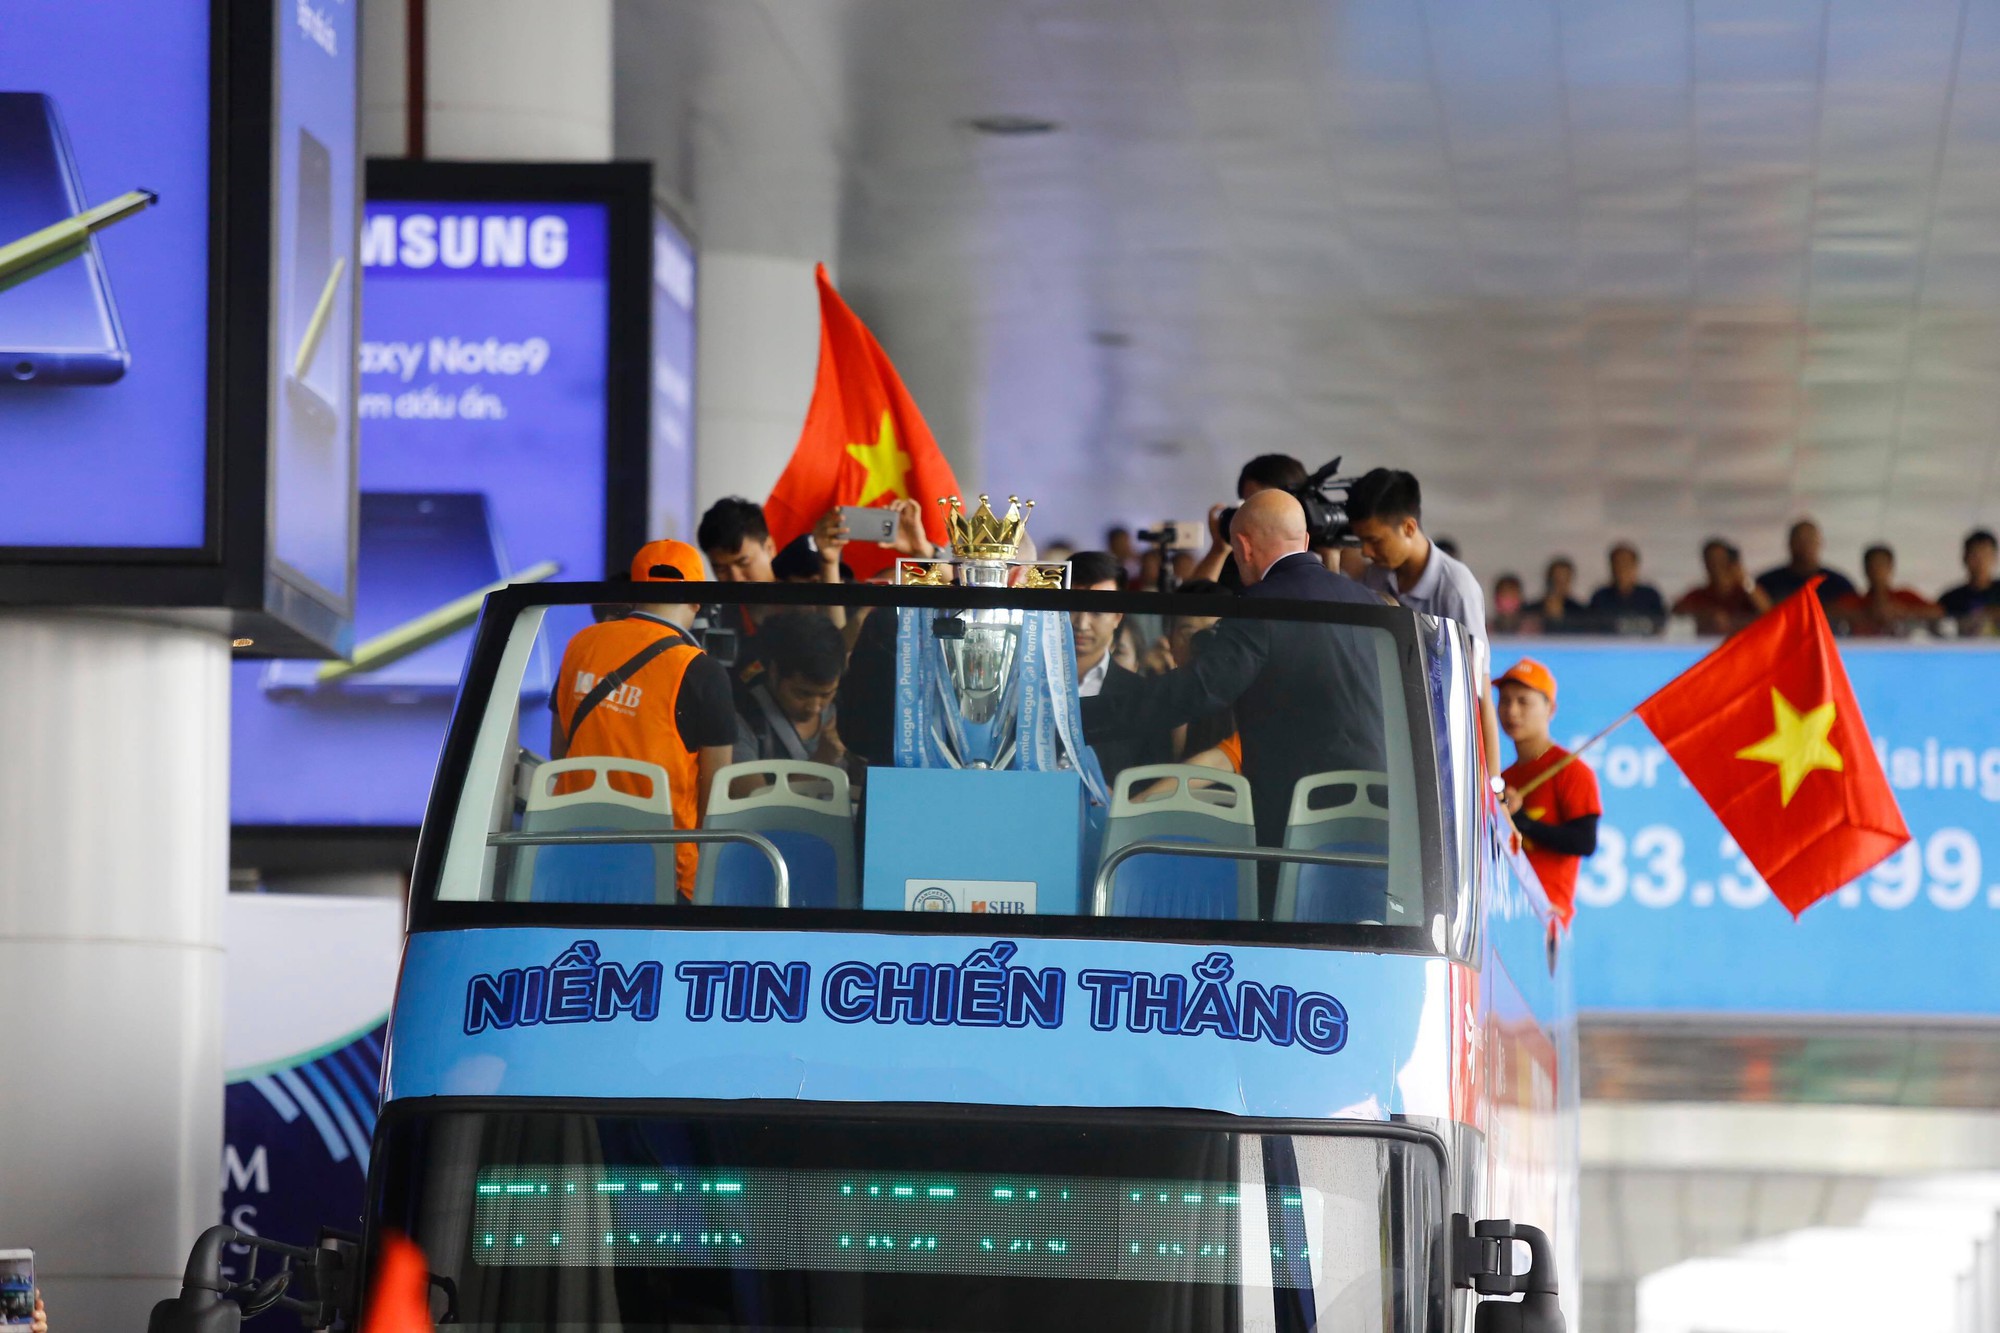 Cúp bạc Premier League được bảo vệ cẩn mật khi đến Việt Nam - Ảnh 3.